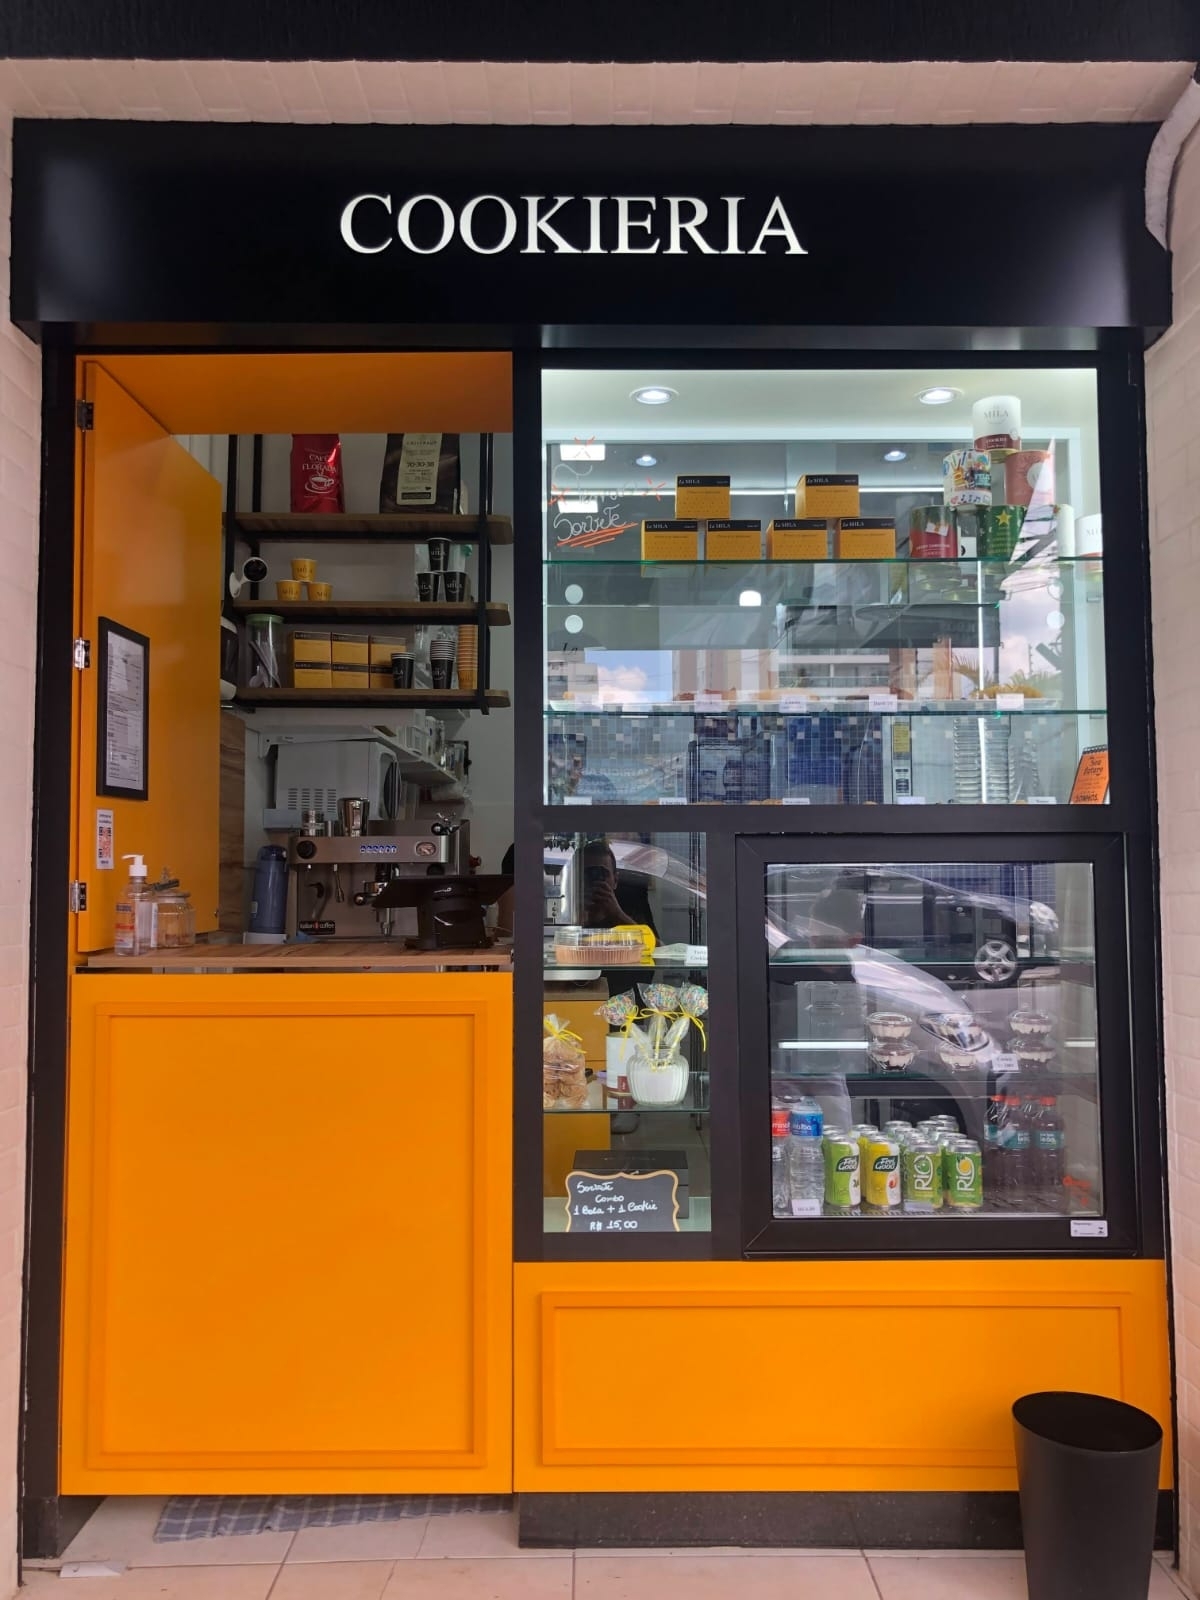 Cookieria / Café / Doceria  em São Paulo